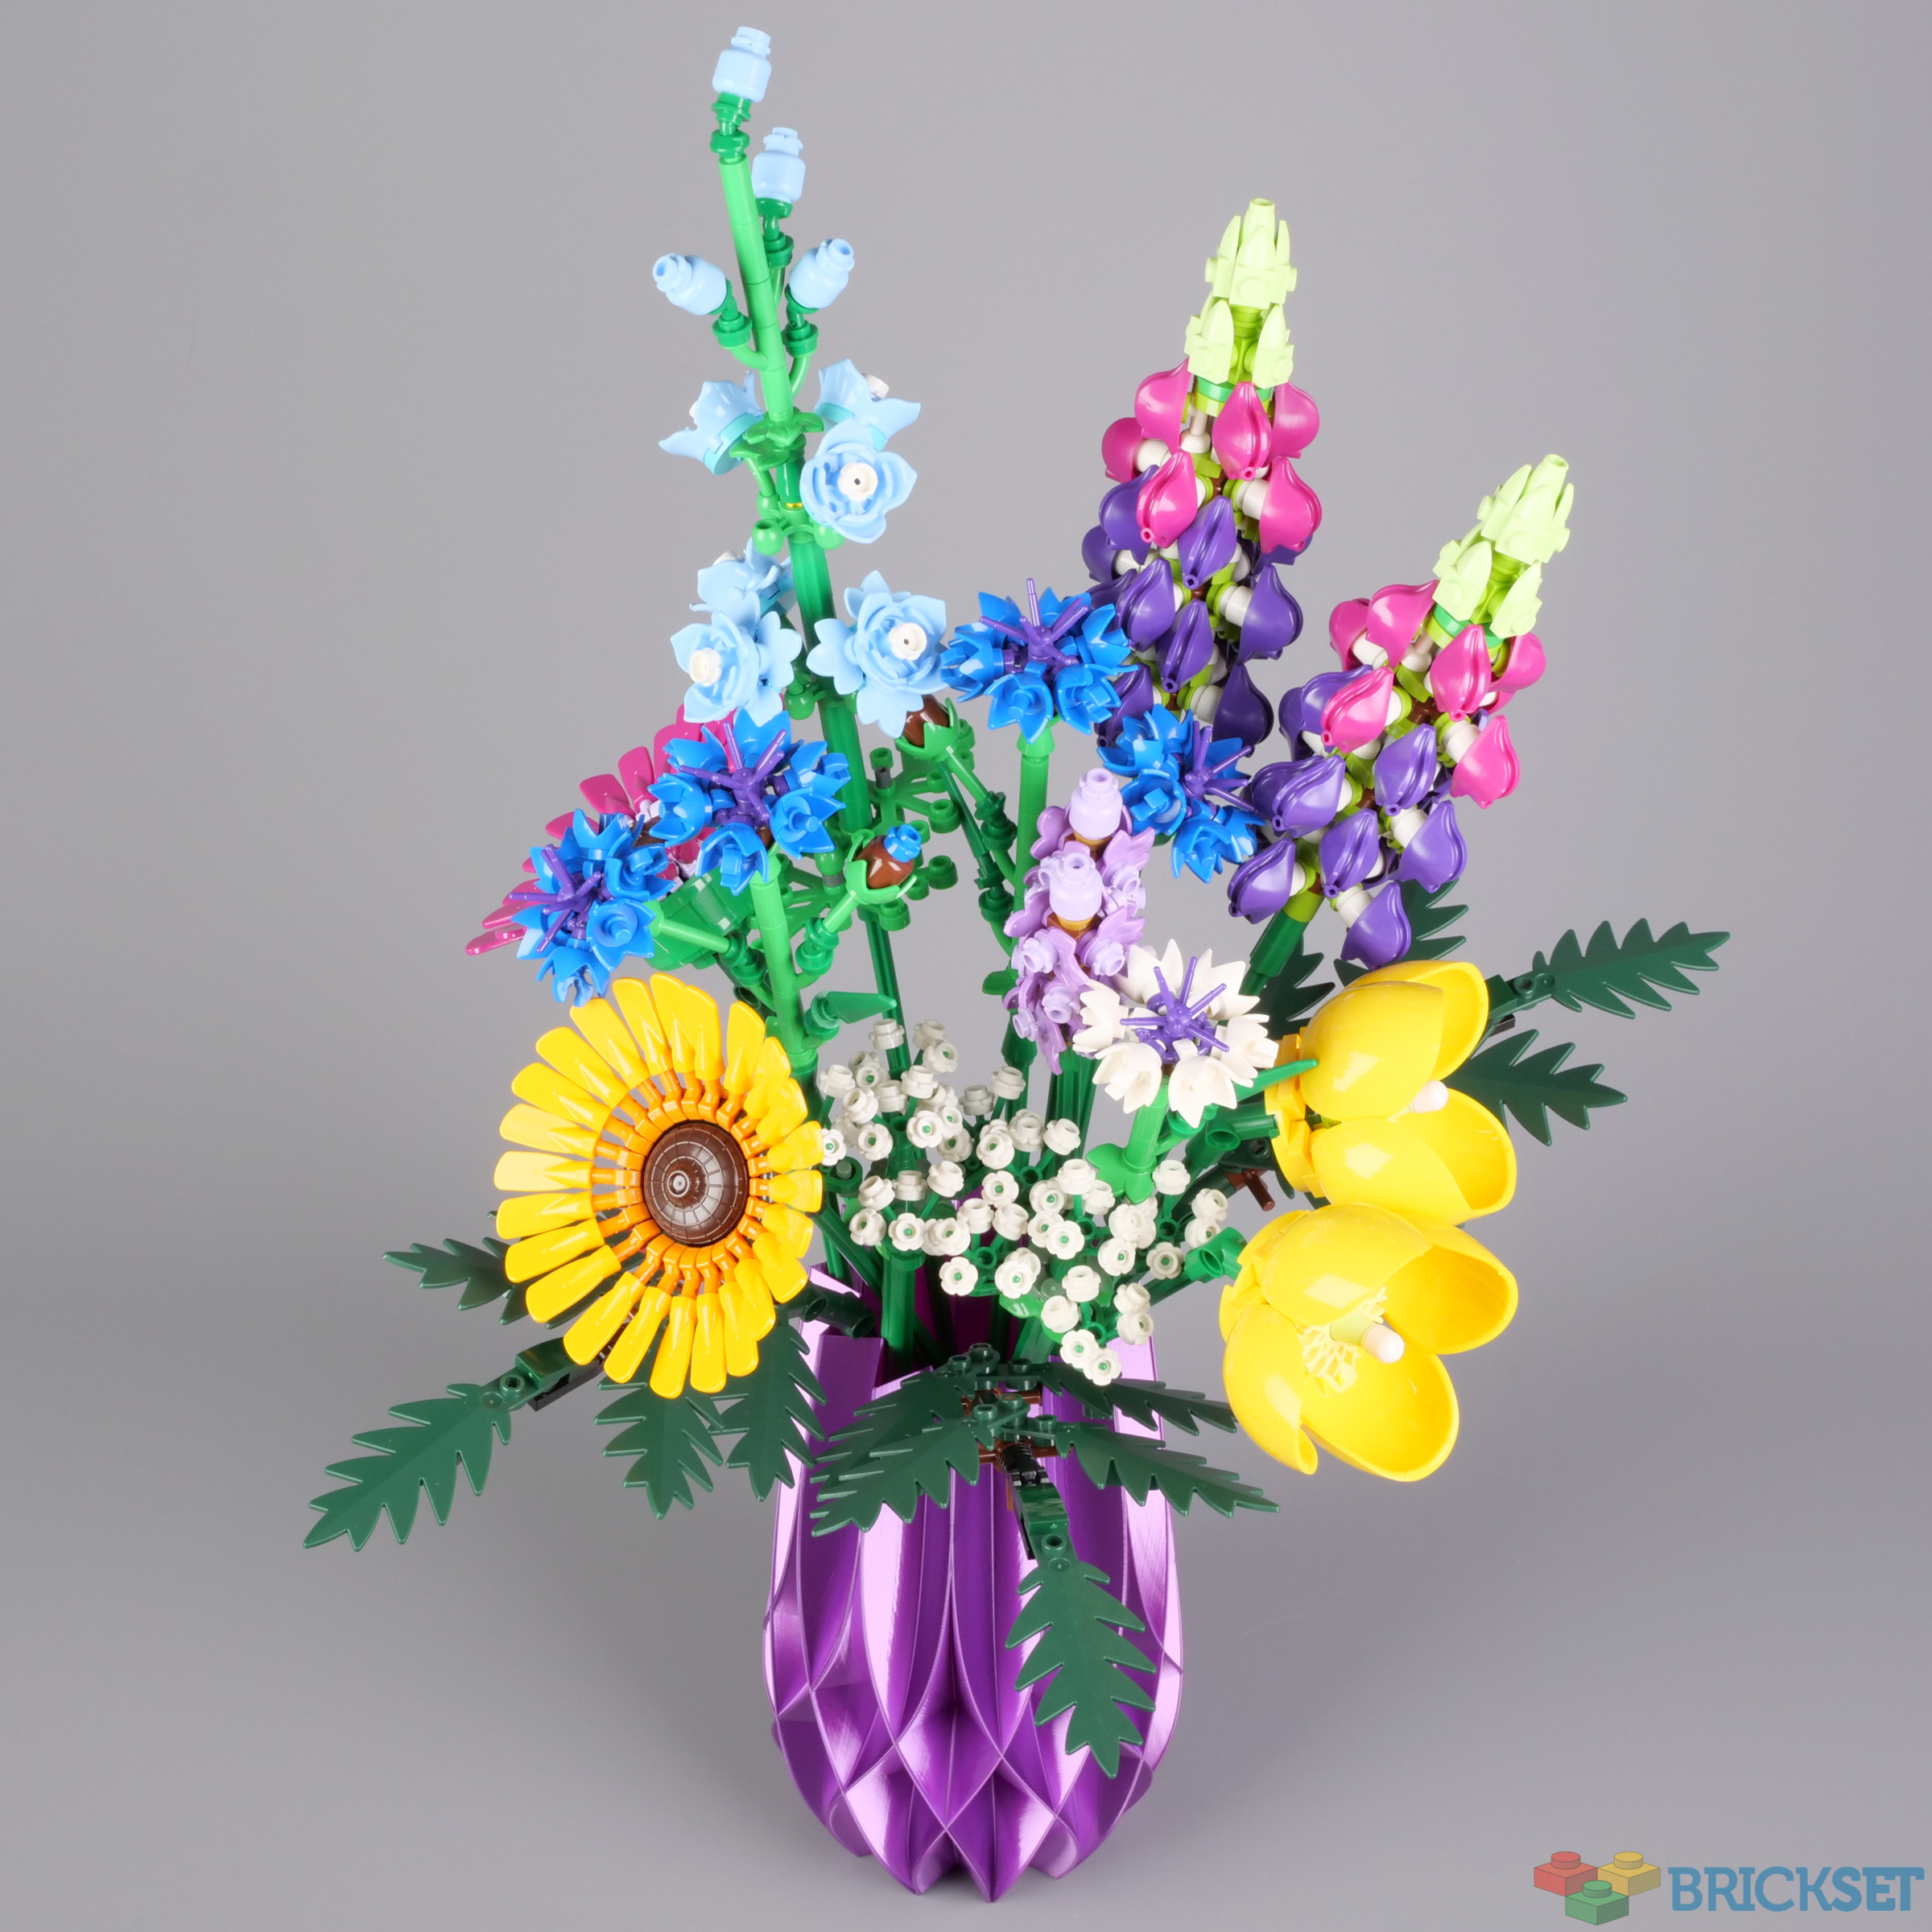 LEGO 10313 Wildflower Bouquet review Brickset